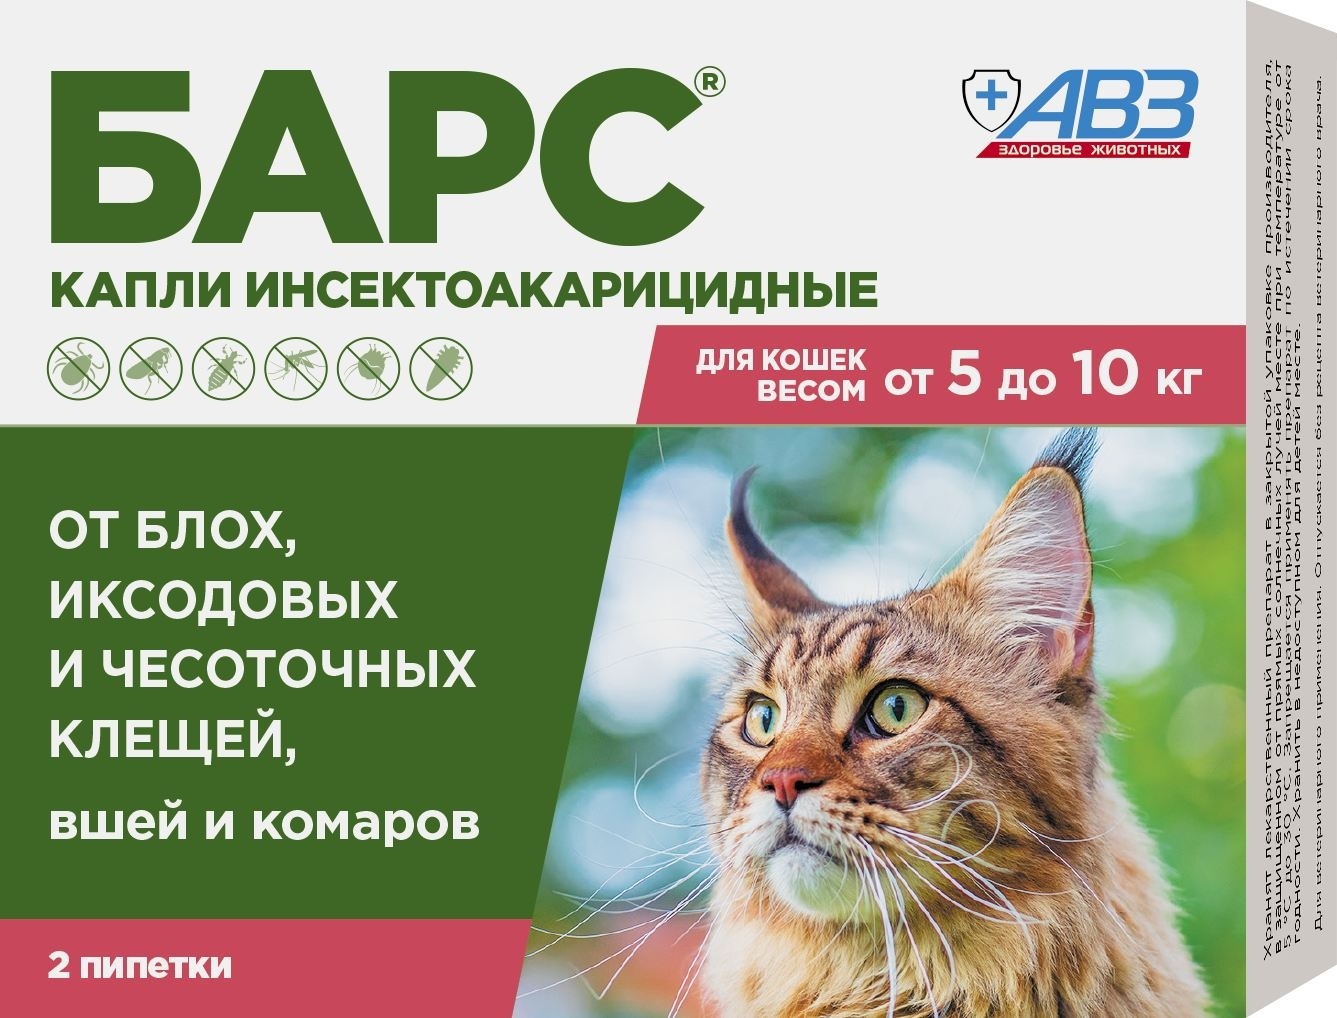 Агроветзащита бАРС капли инсектоакарицидные для кошек от 5 до 10 кг (2 пип. по 0,5 мл) (12 г) Агроветзащита бАРС капли инсектоакарицидные для кошек от 5 до 10 кг (2 пип. по 0,5 мл) (12 г) - фото 1